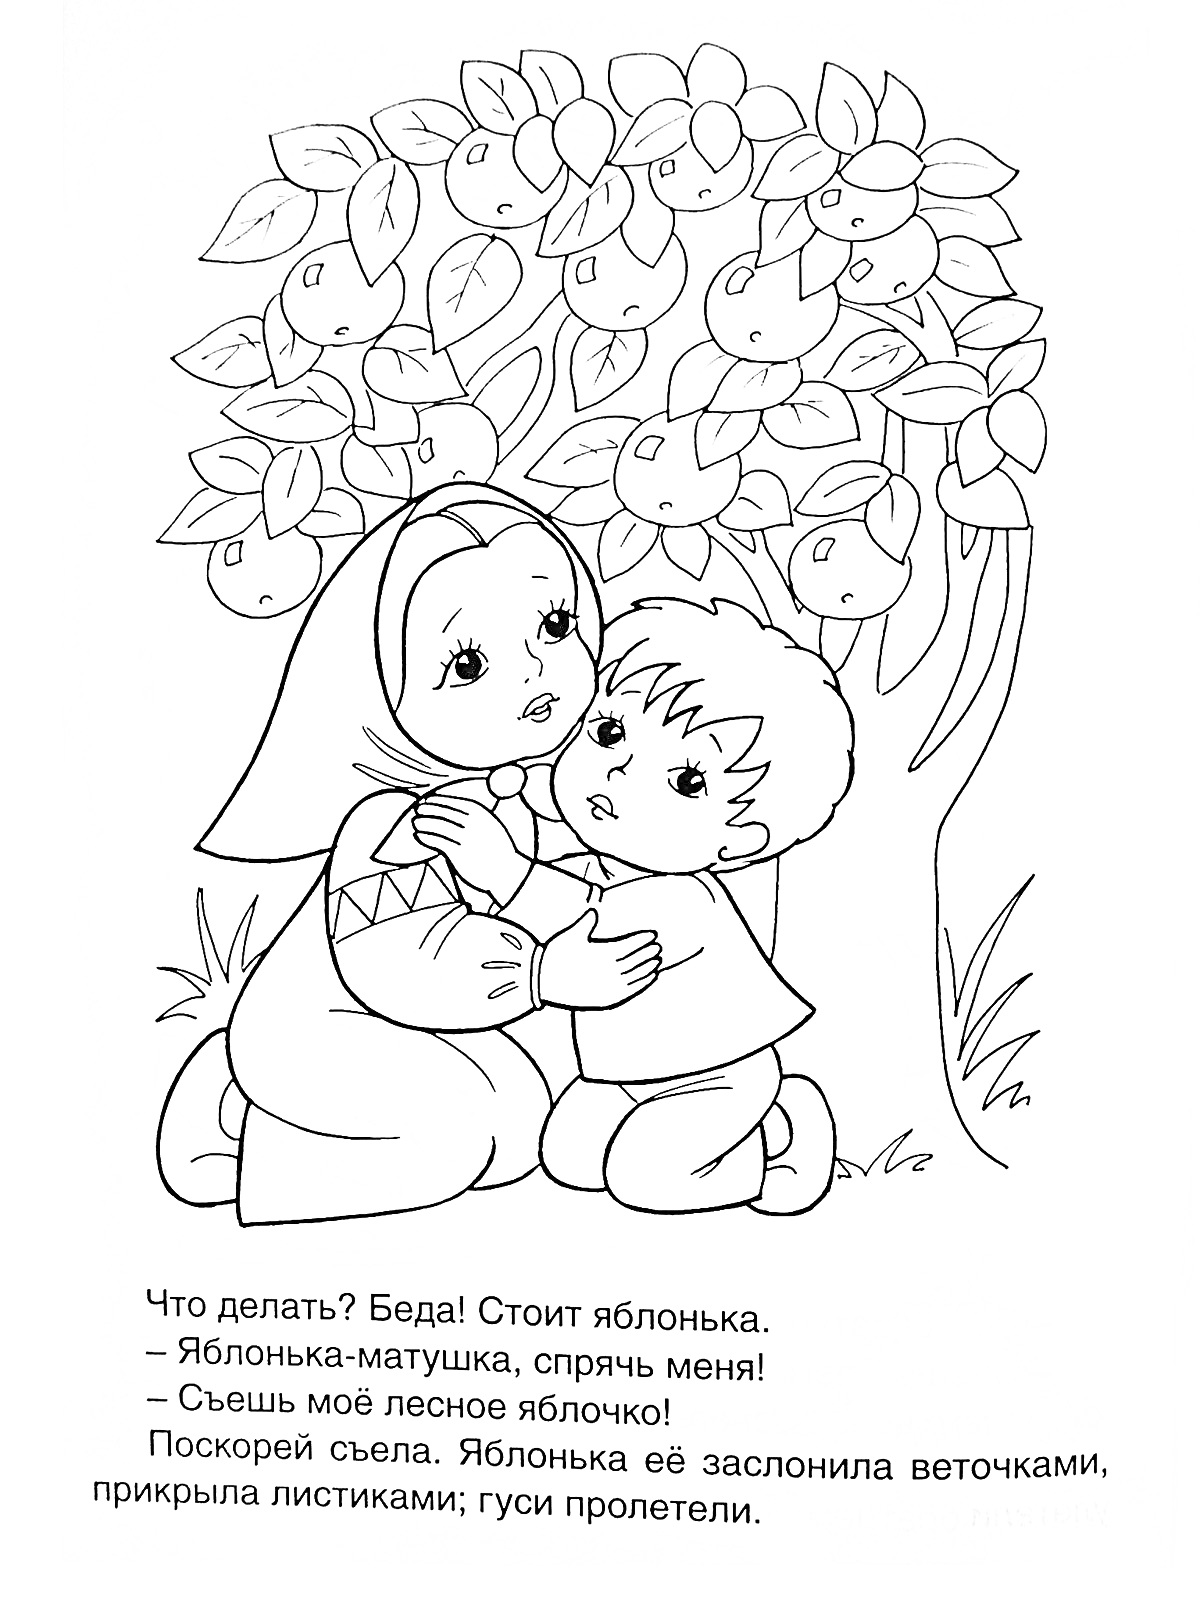 девочка и мальчик прячутся под яблоней с яблоками, вокруг трава